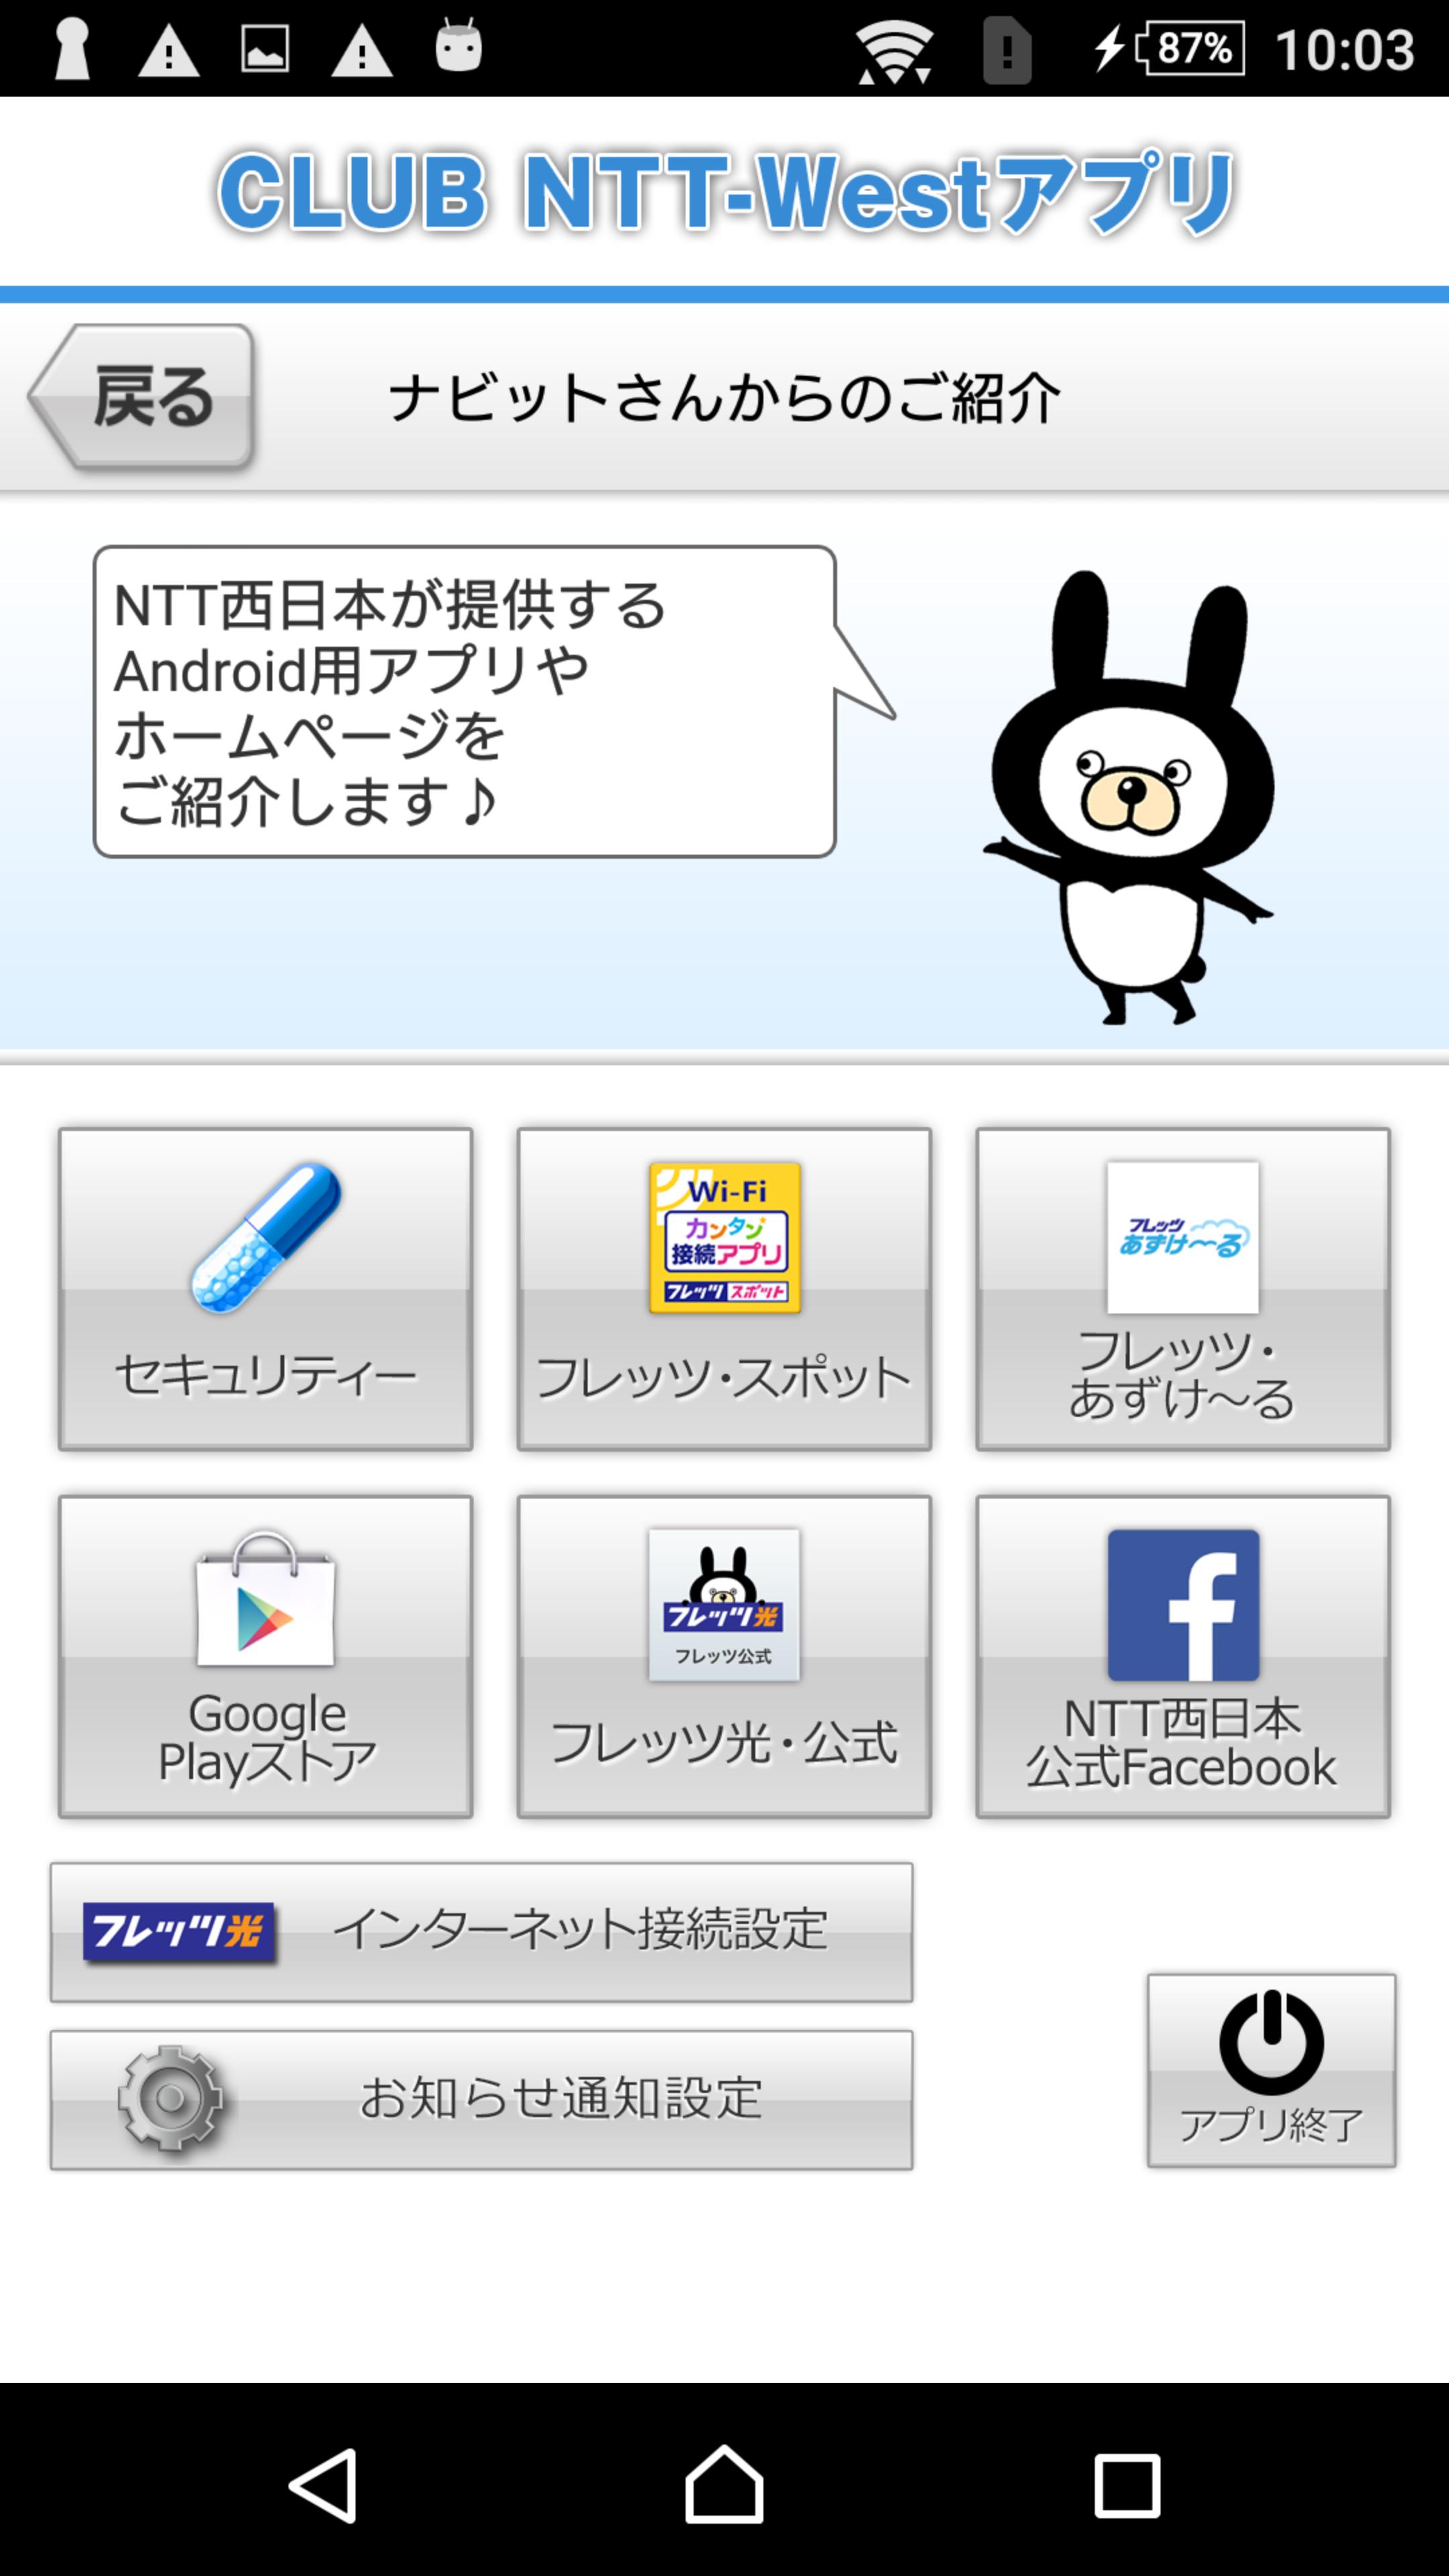 公式 Ntt西日本 Club Ntt Westアプリ สำหร บแอนดรอยด ดาวน โหลด Apk